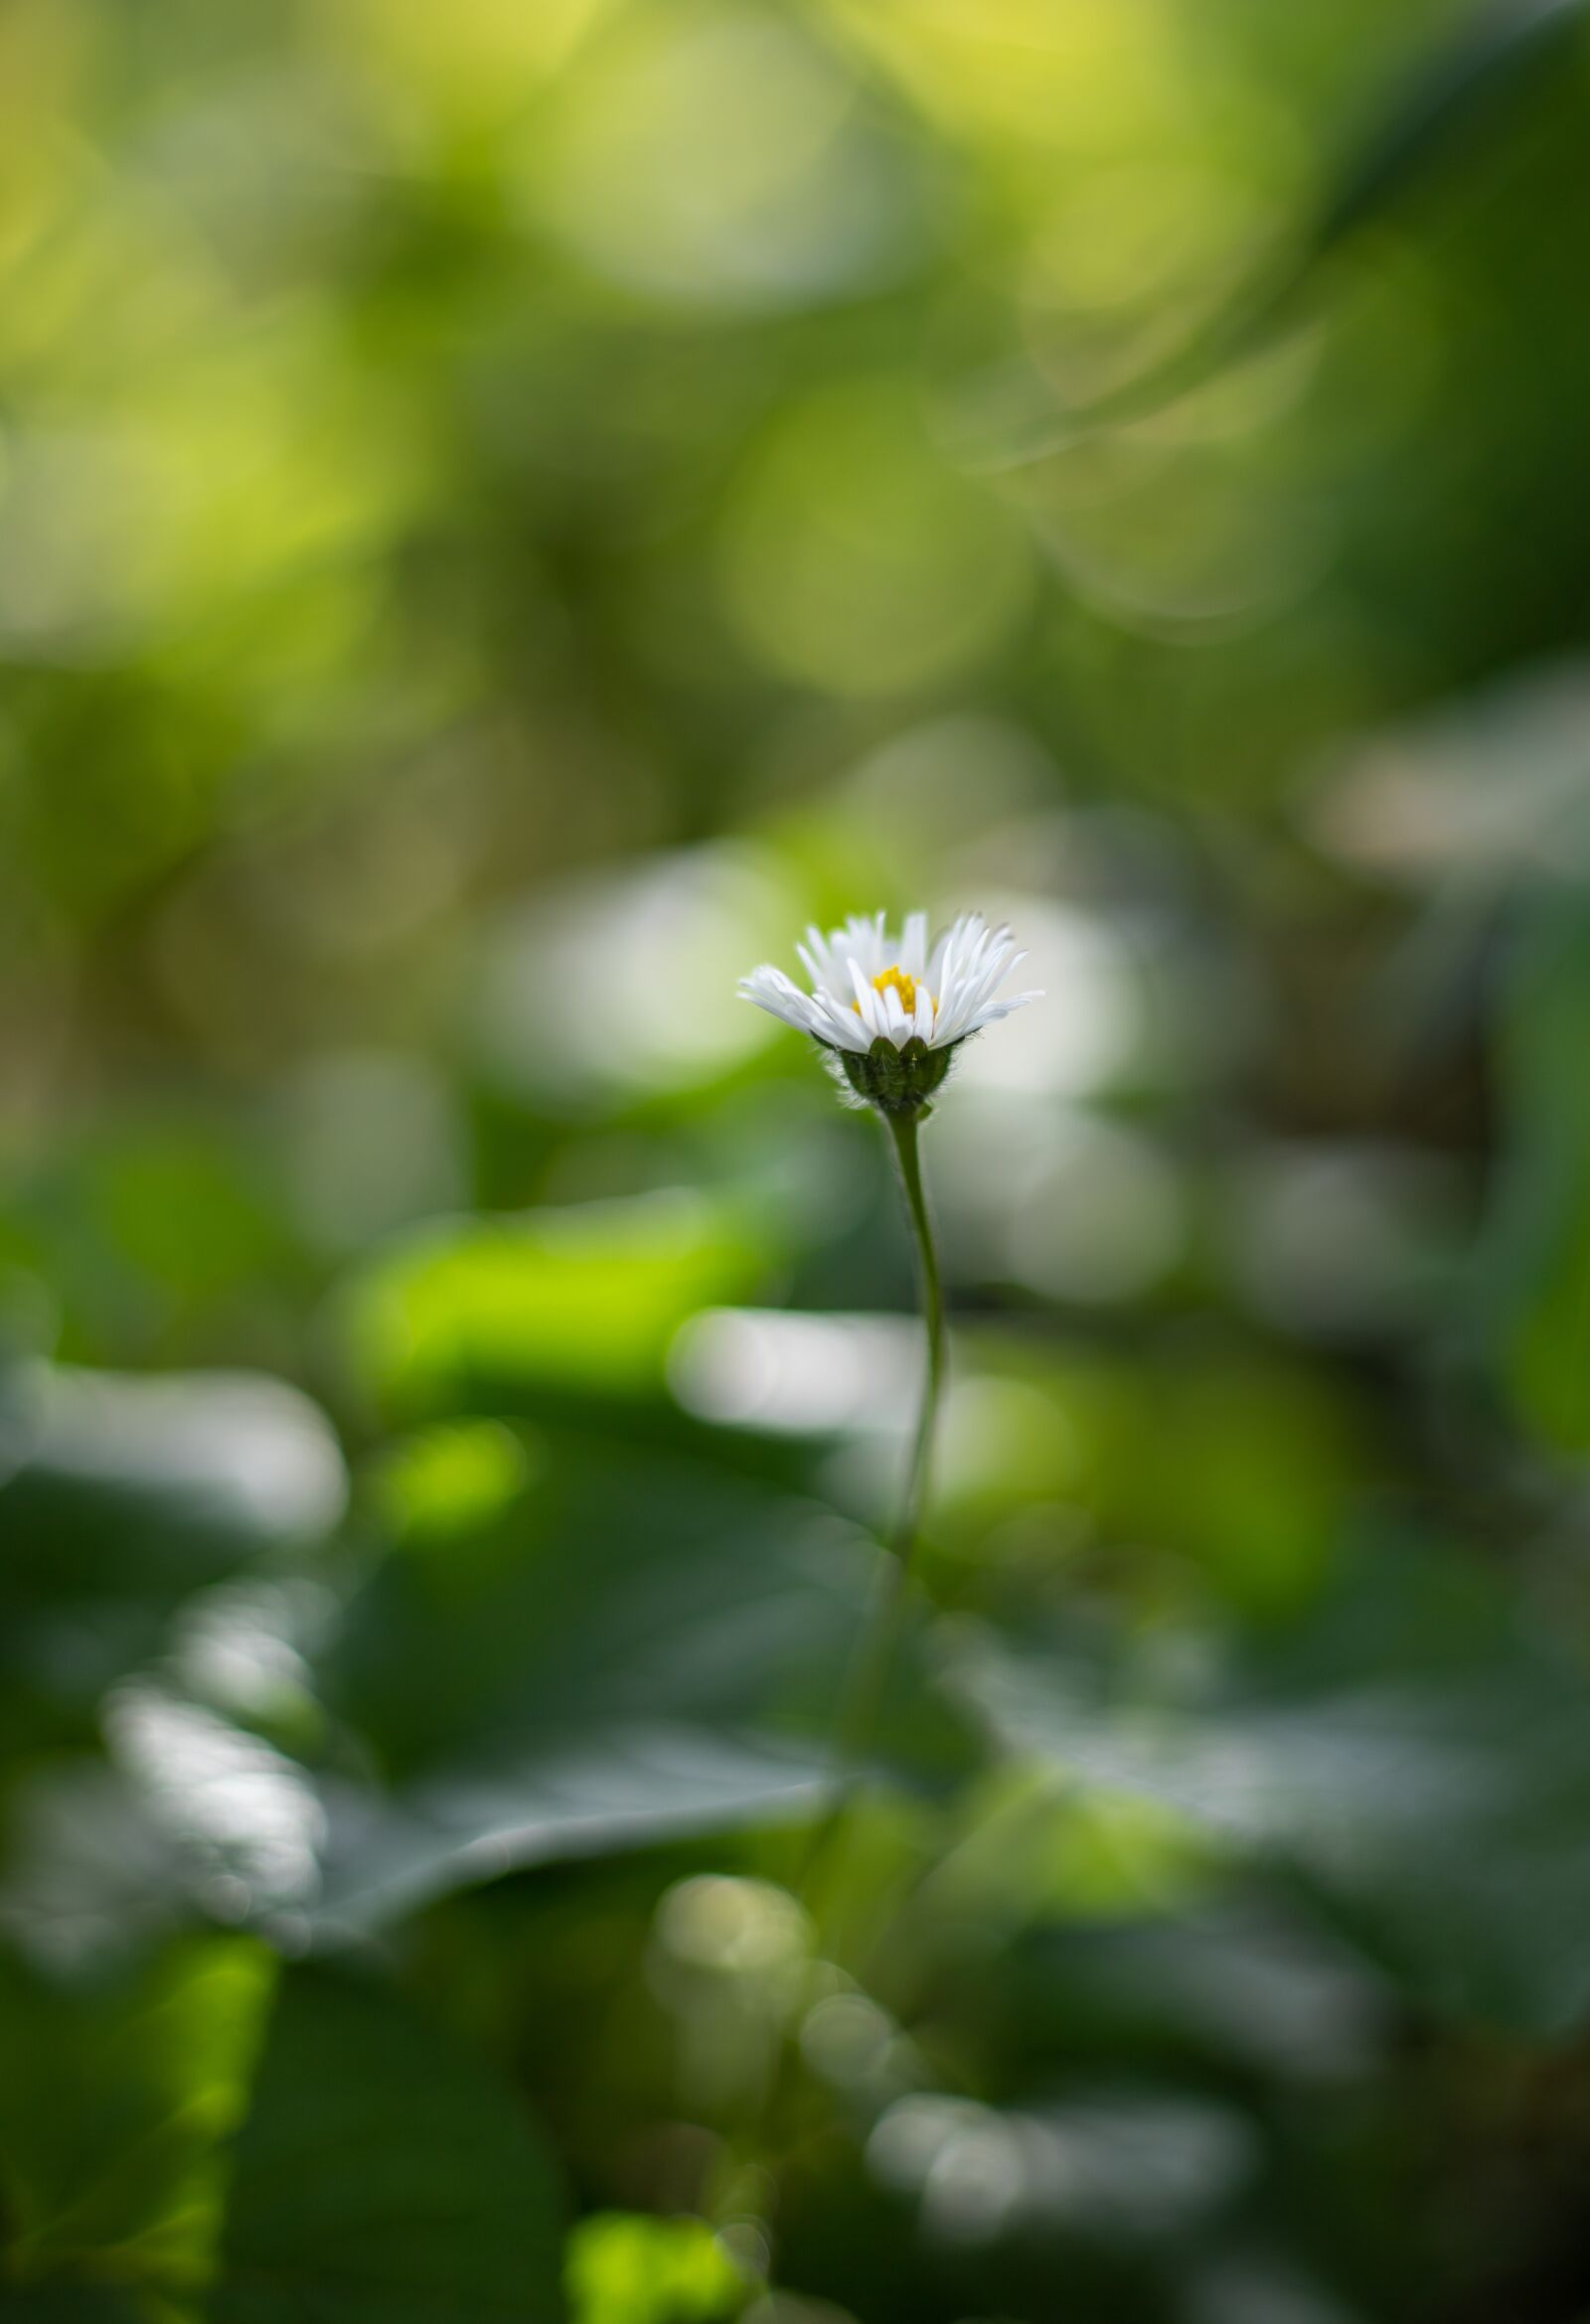 Canon EOS 6D Mark II + Canon EF 50mm F1.8 STM sample photo. Daisy, garden, flower photography